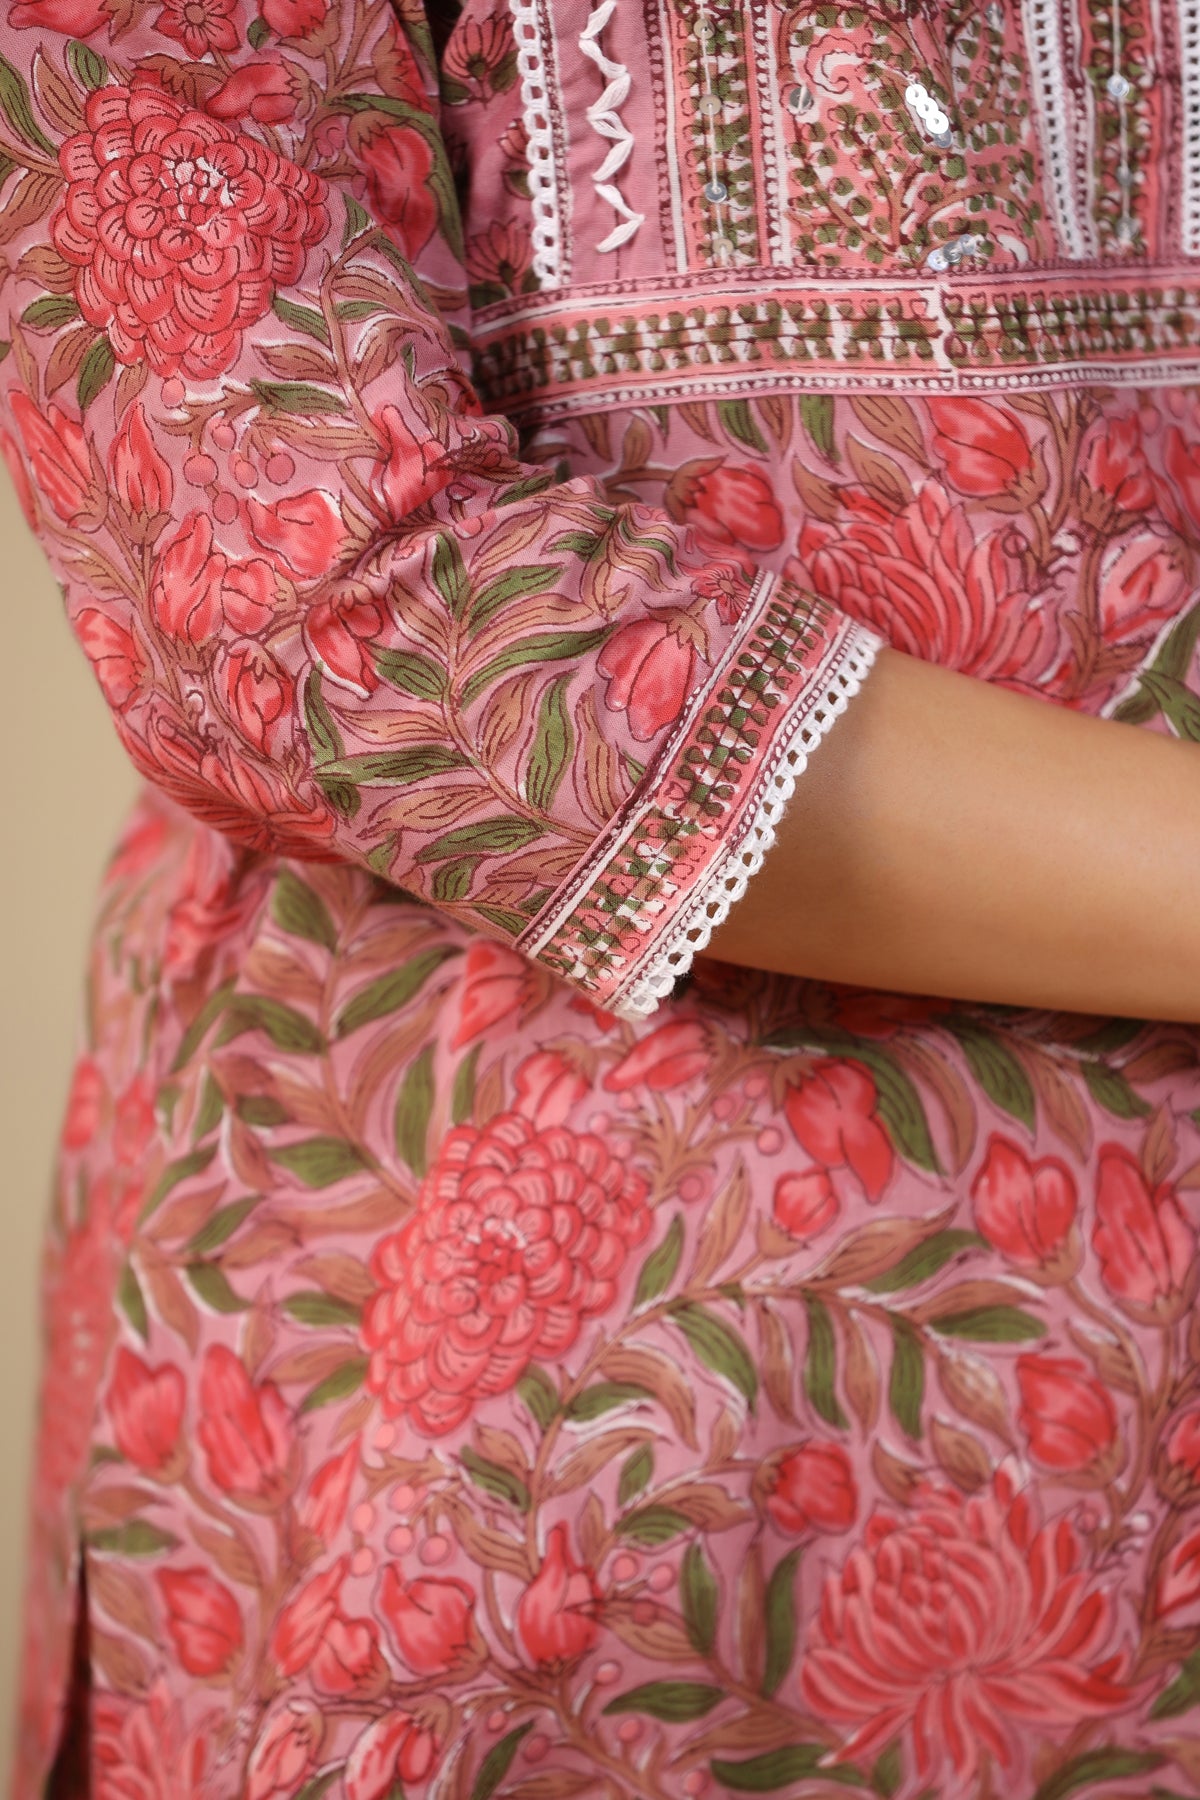 Maheen Mahek Round Neck Pink Block Printed Cotton Kurta - shahenazindia